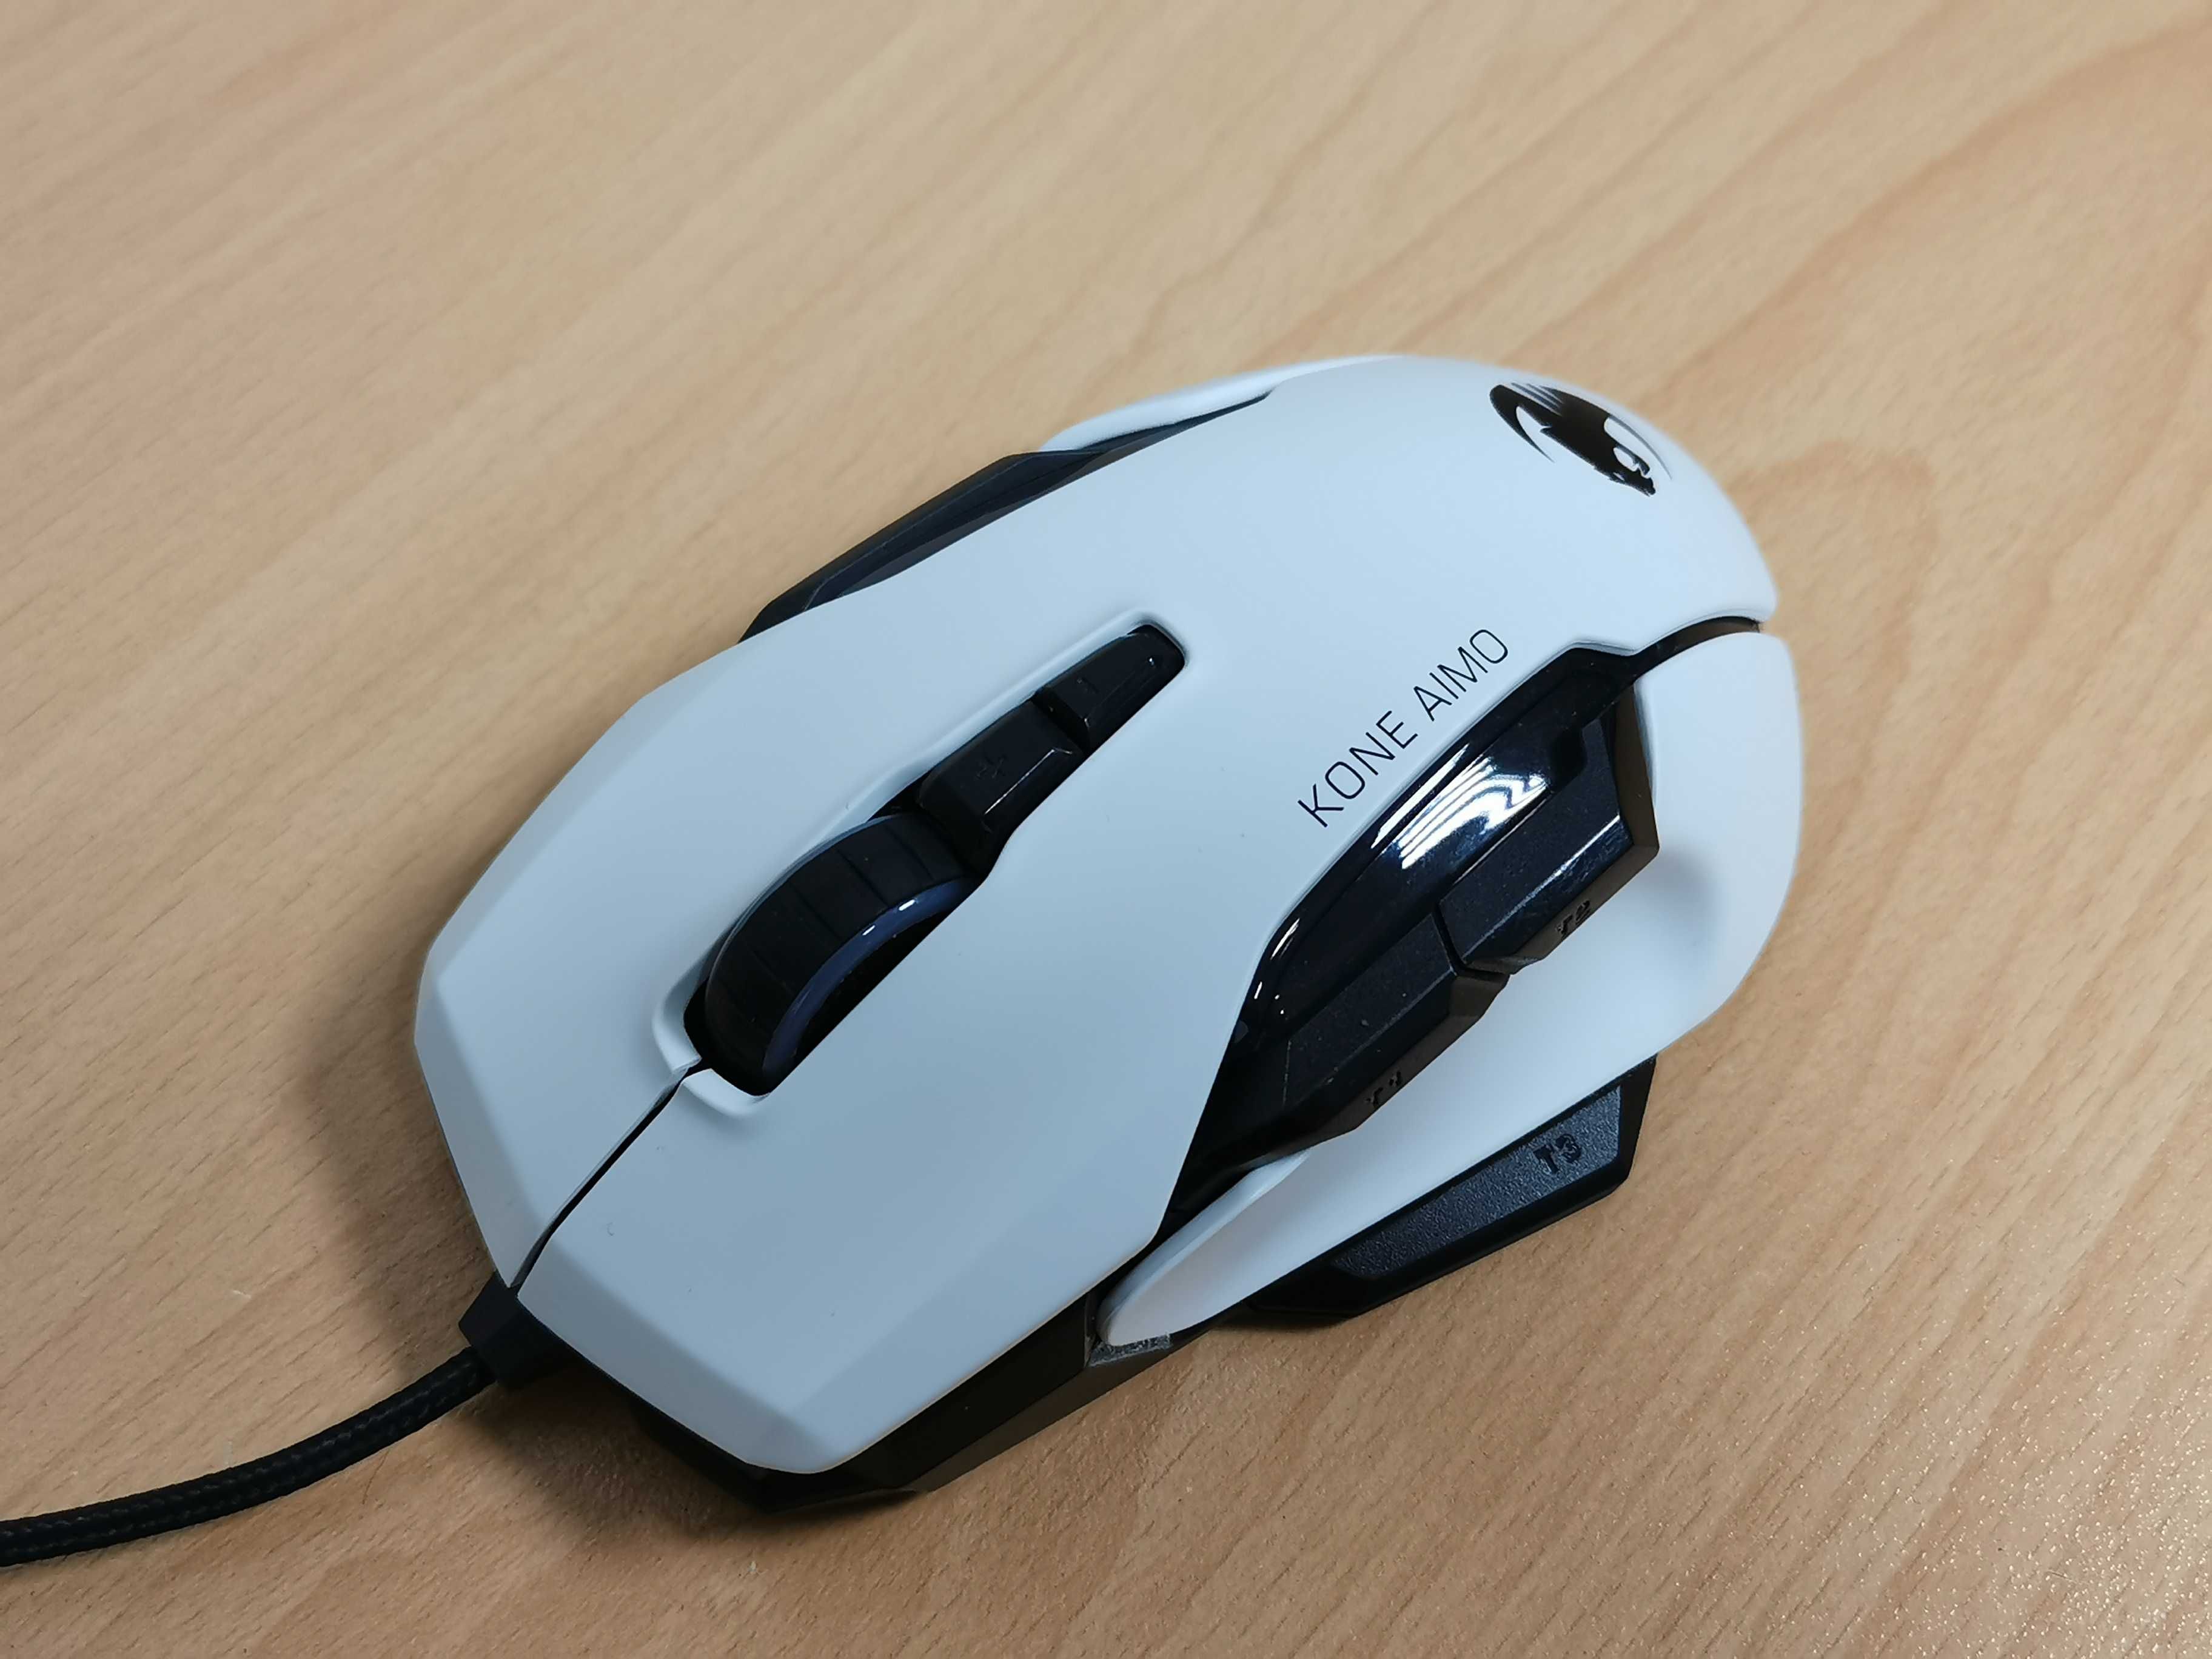 Roccat Kone AIMO геймърска мишка с RGB осветление